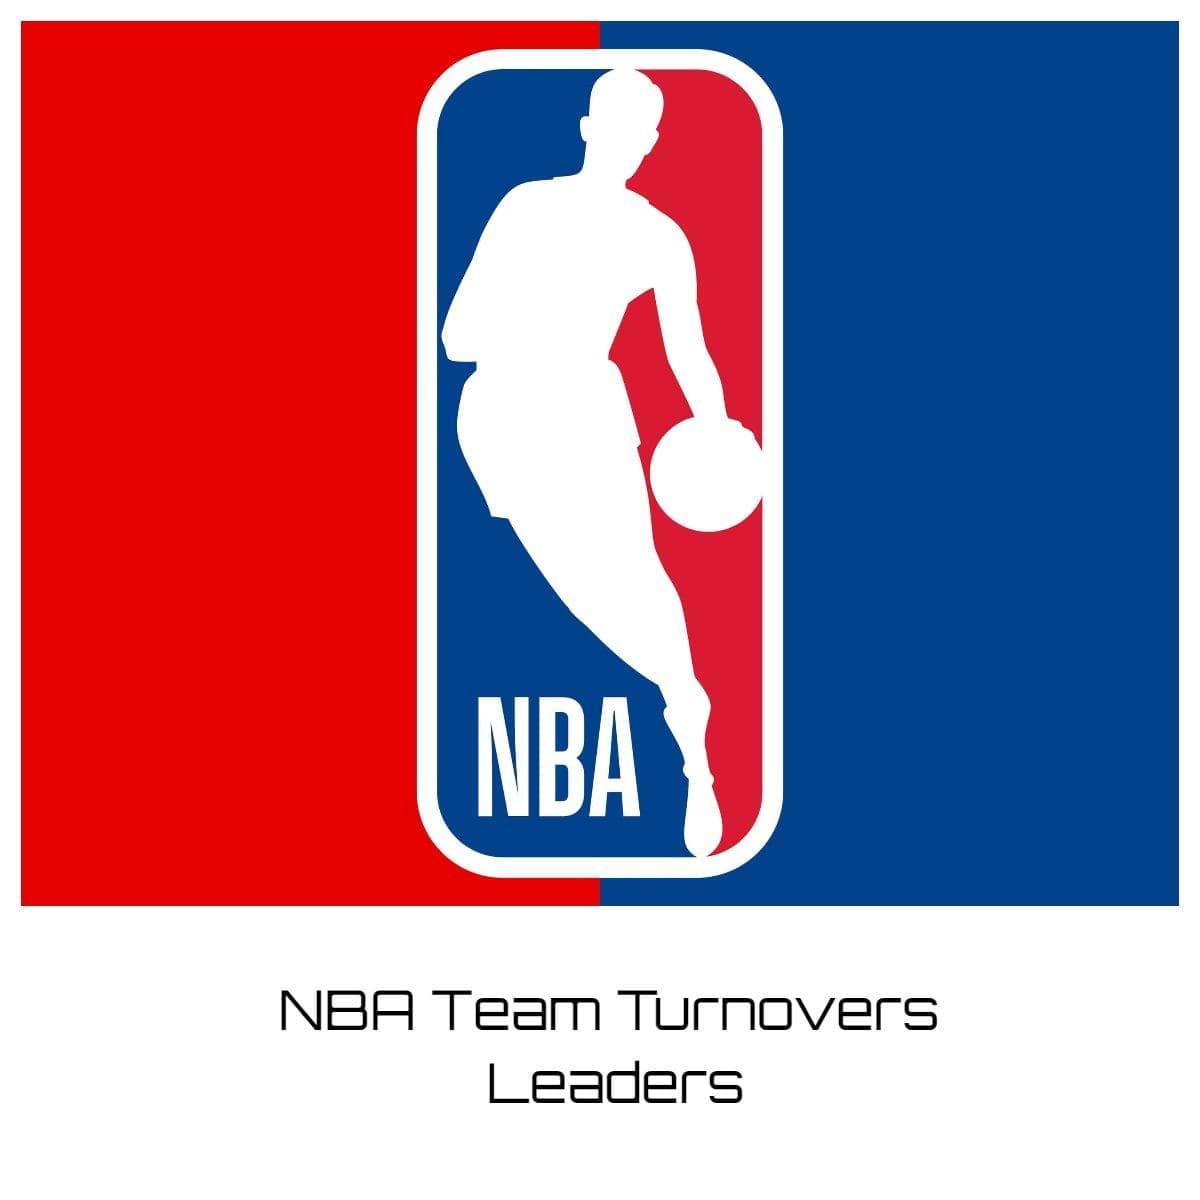 NBA Team Turnovers Leaders